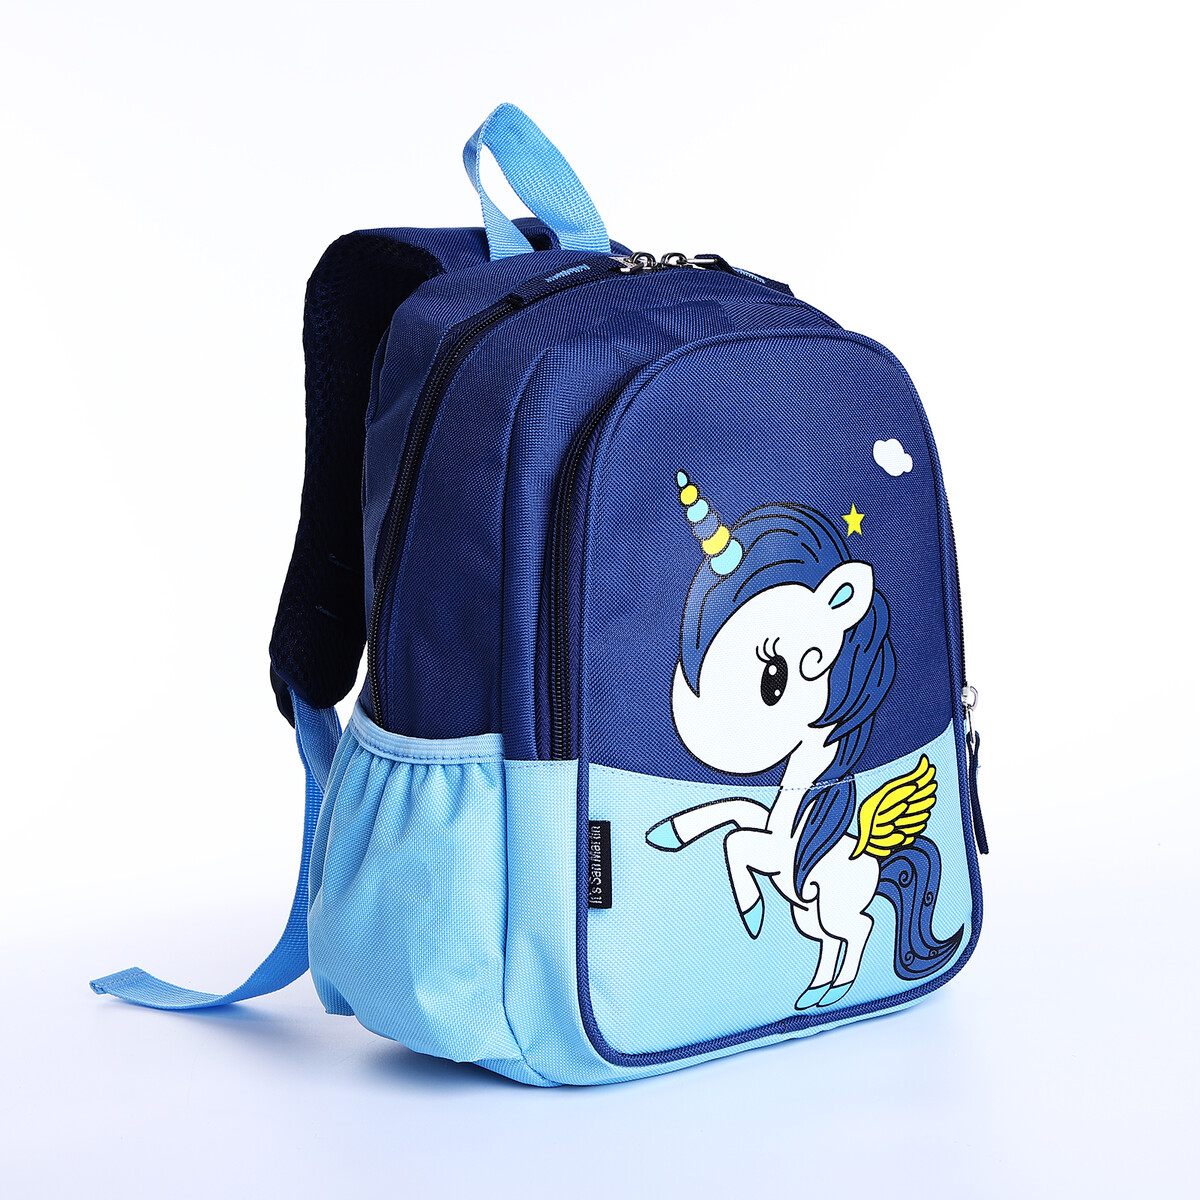 Рюкзак детский на молнии, наружный карман, цвет синий/голубой рюкзак текстильный 46х30х10 см вертикальный карман